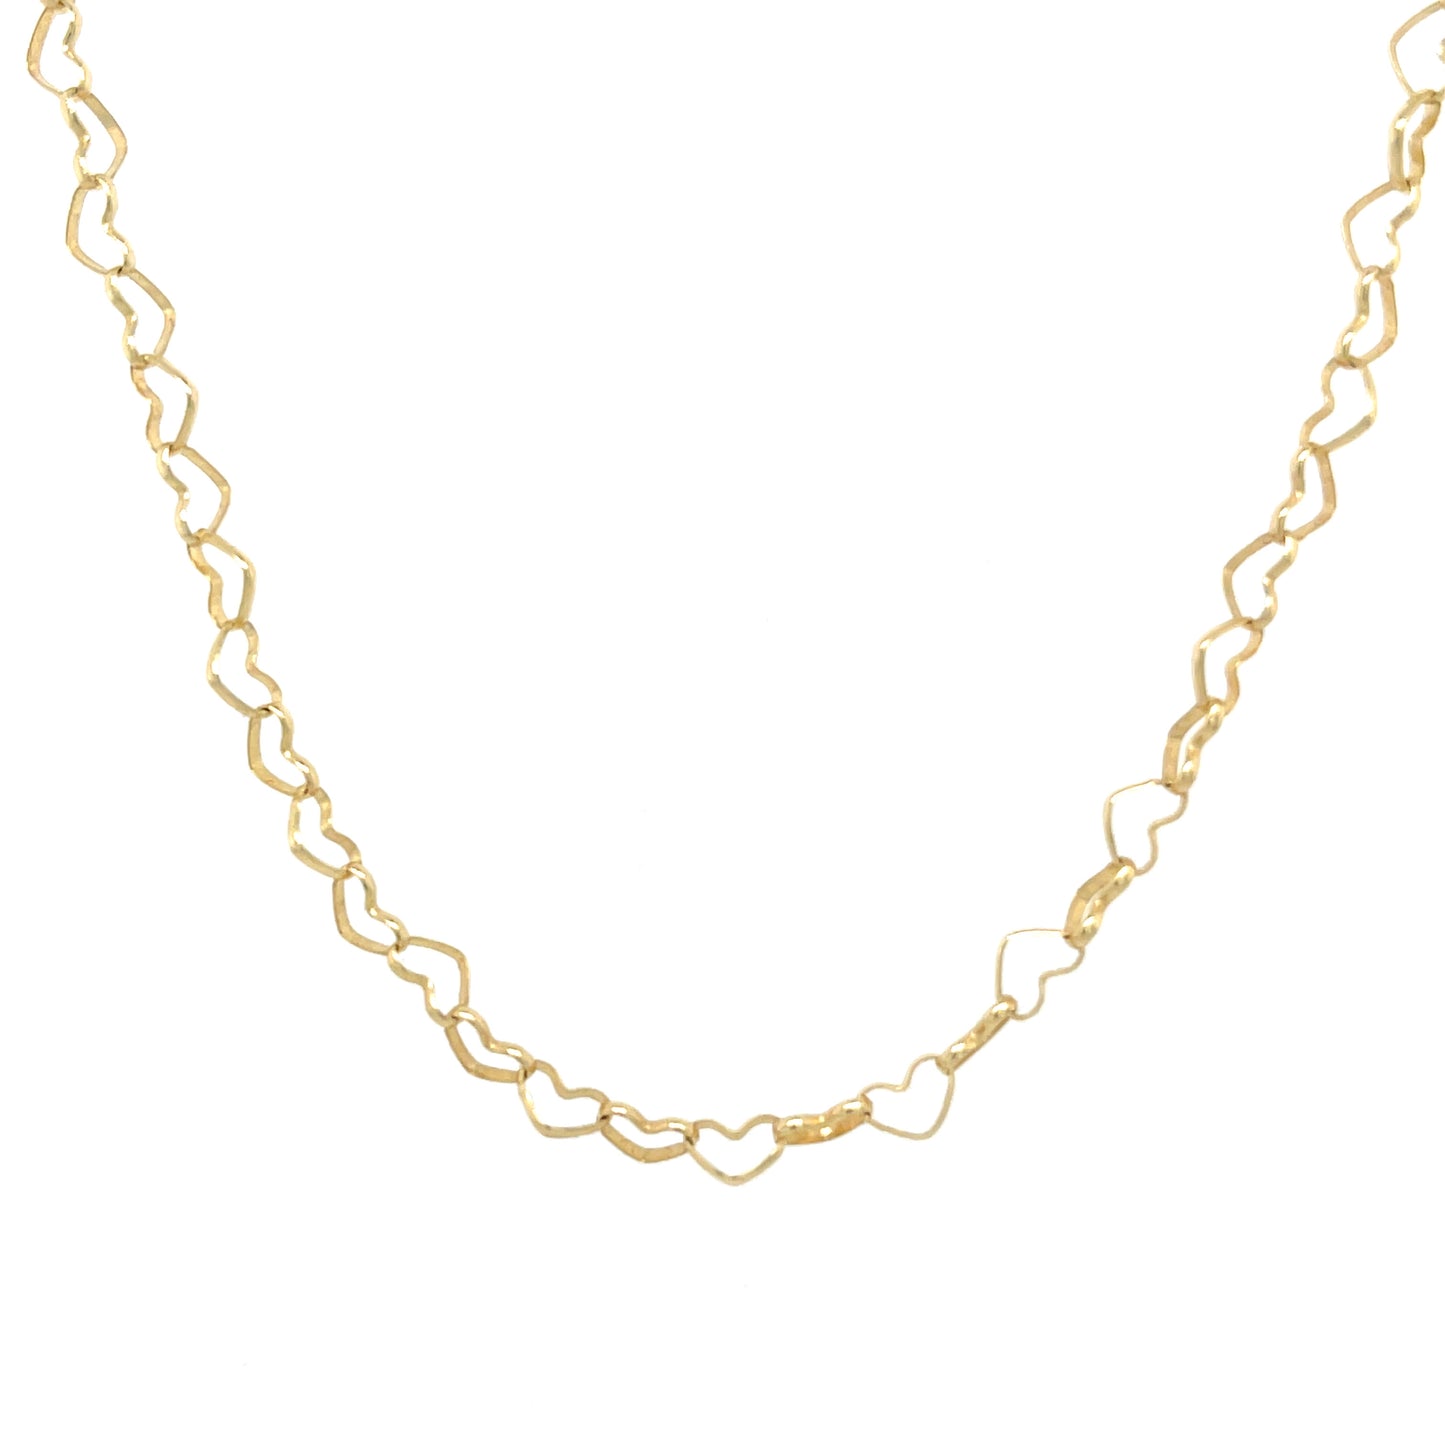 Interlocking Hearts chain Lariat necklace